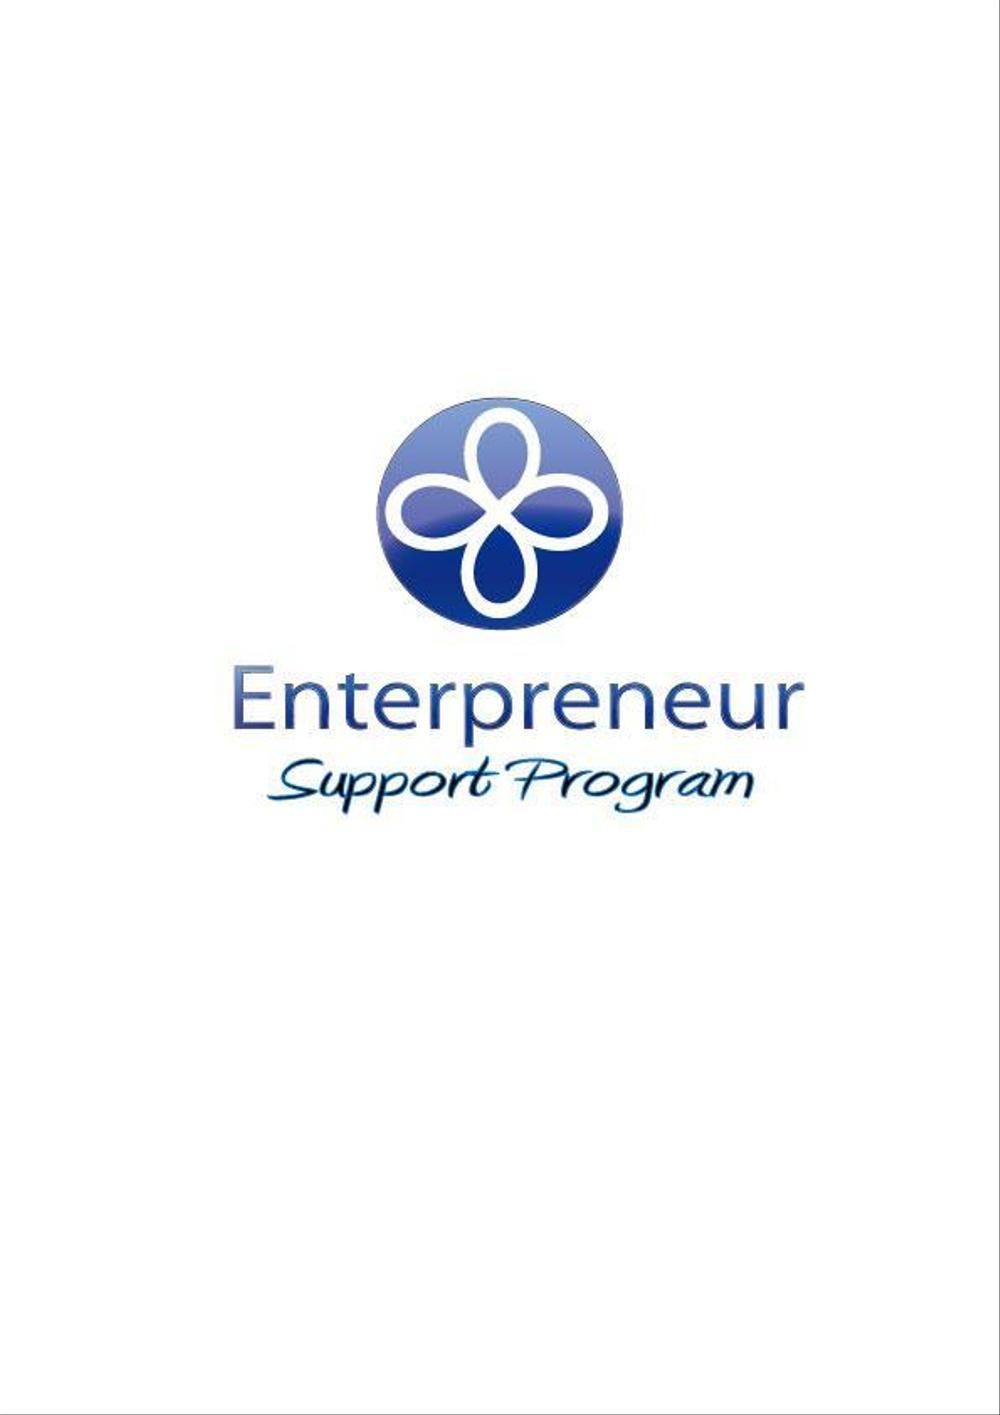 Entrepreneur-support-program5.jpg